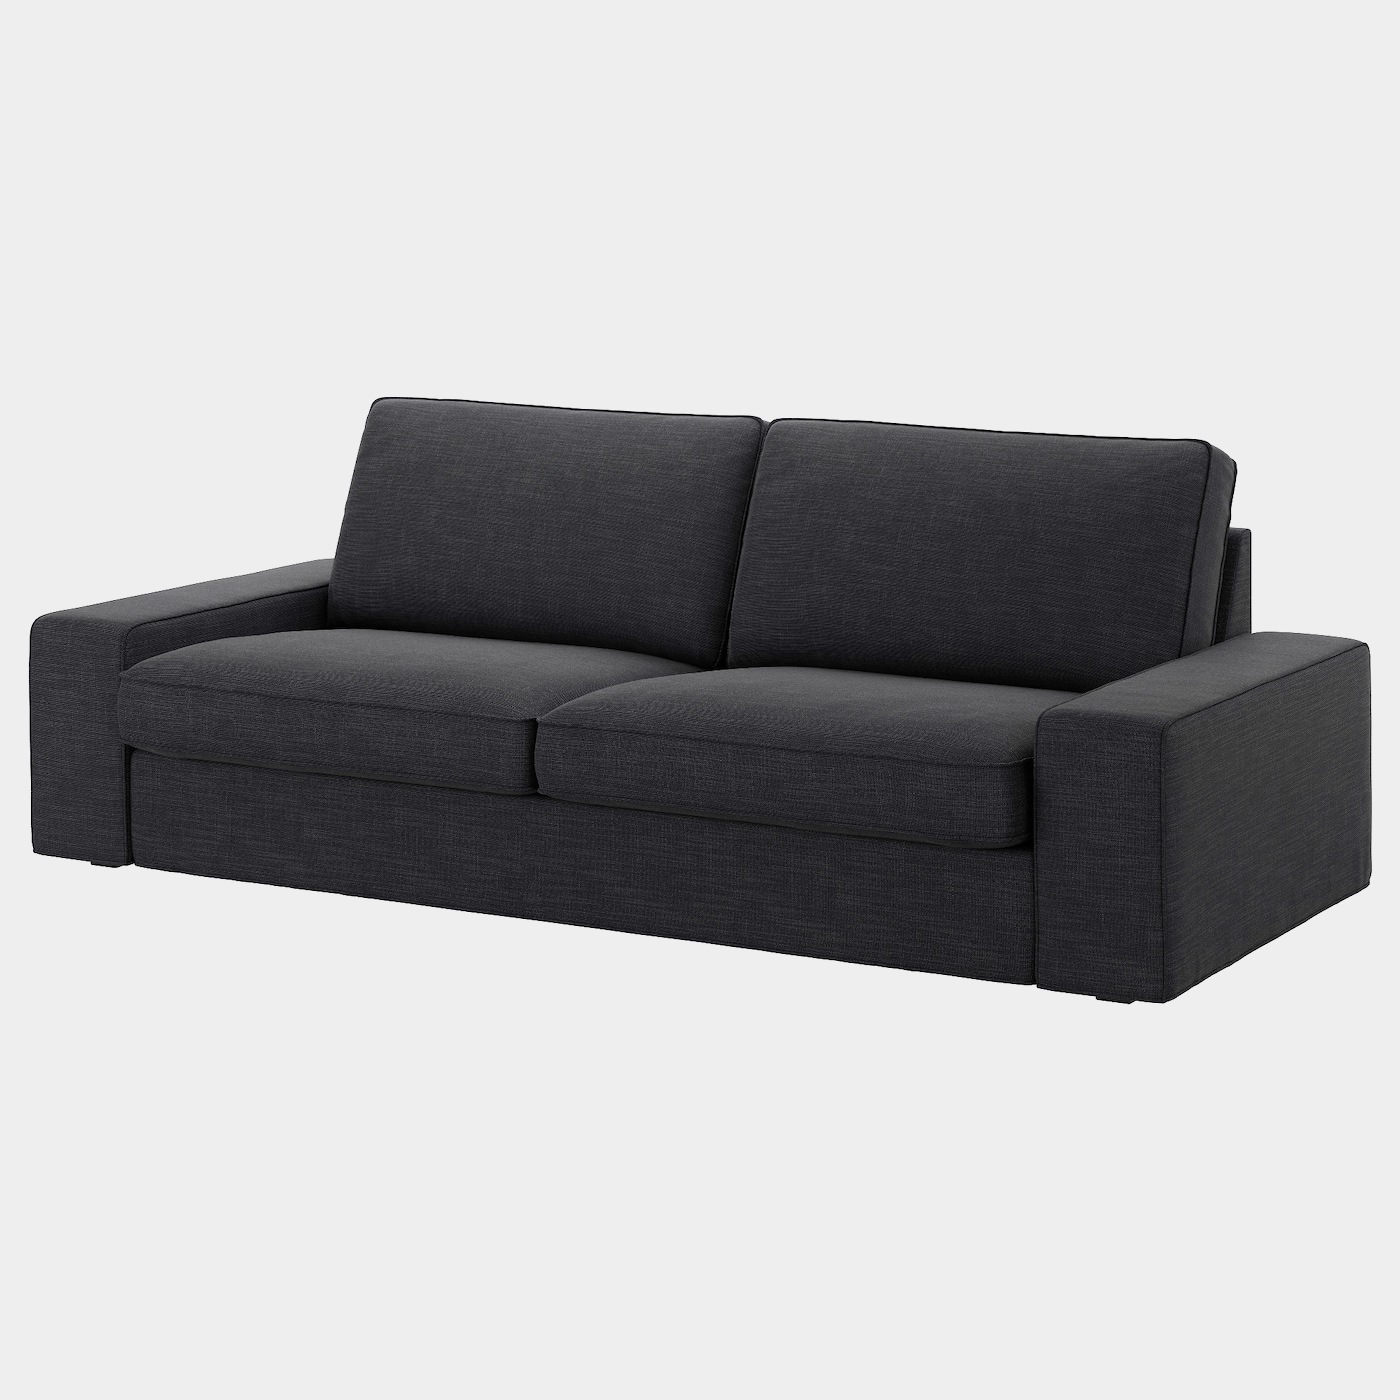 KIVIK Bezug 3er-Sofa  - extra Bezüge - Möbel Ideen für dein Zuhause von Home Trends. Möbel Trends von Social Media Influencer für dein Skandi Zuhause.